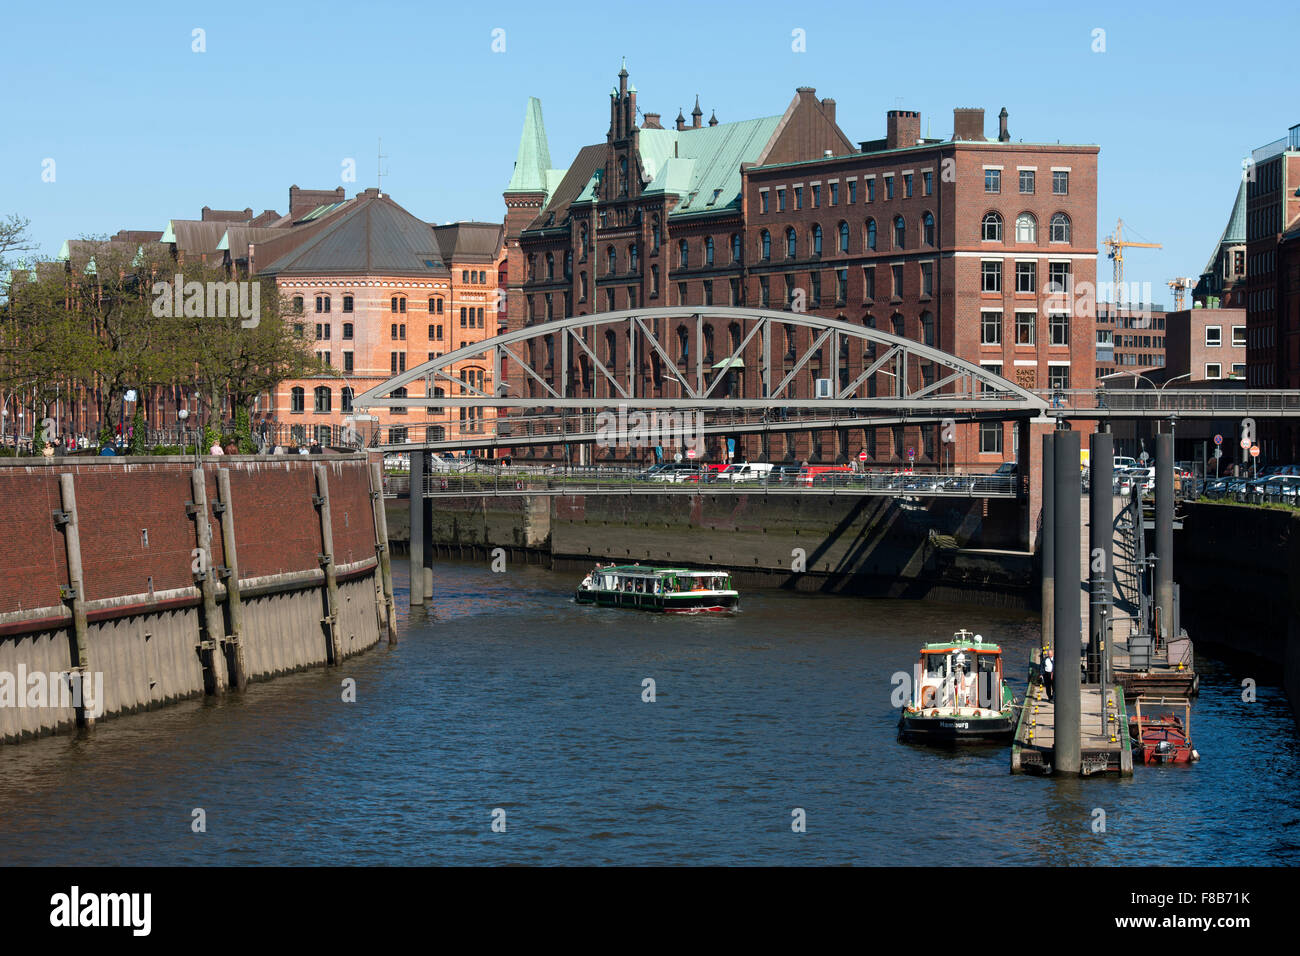 Deutschland, Amburgo, Zollkanal, vorne Kibbelstegbrücke die zur Speicherstadt, dahinter der Sandthorquaihof Foto Stock